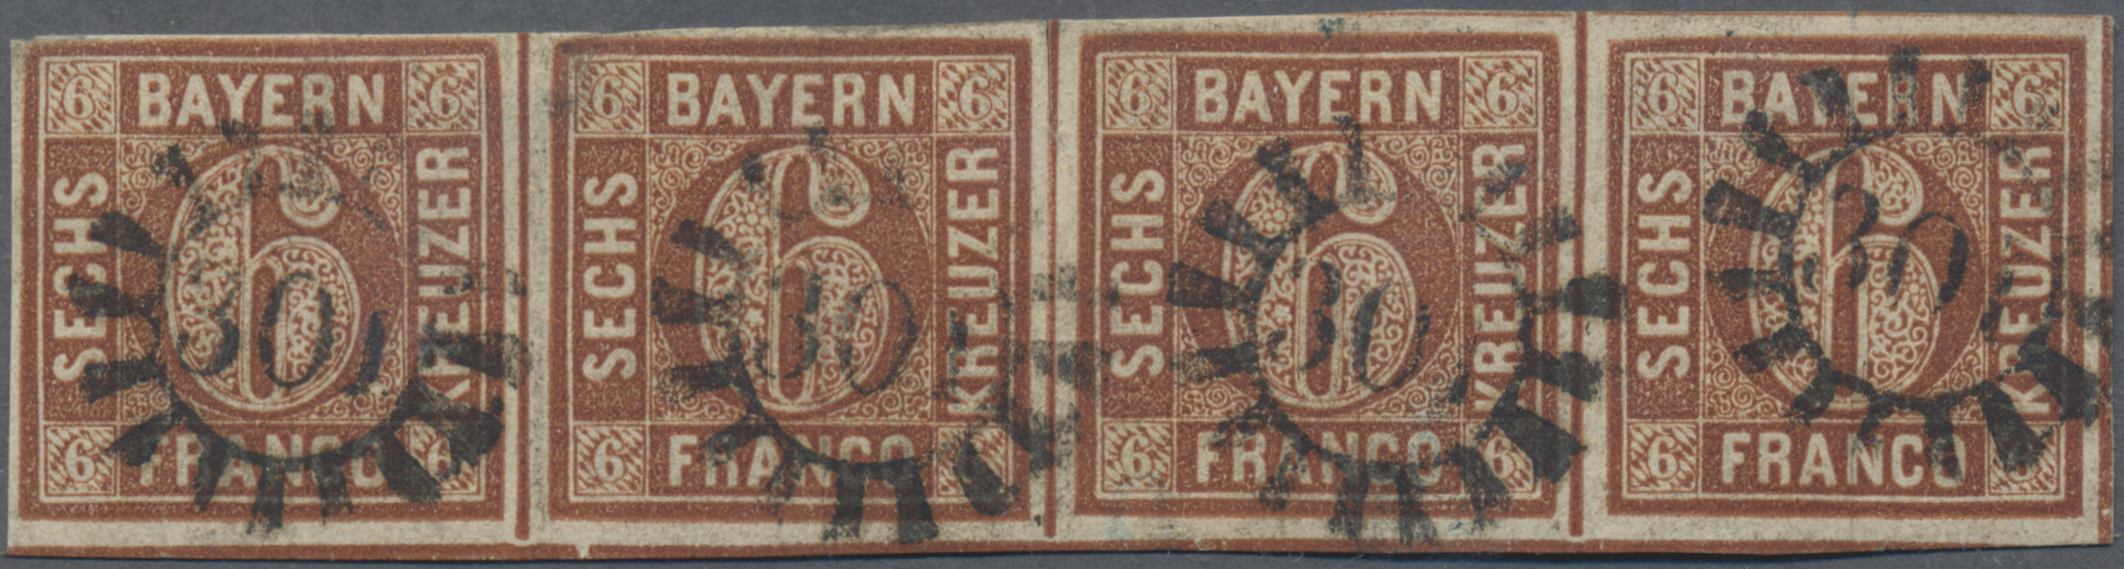 Lot 05039 - Bayern - Marken und Briefe  -  Auktionshaus Christoph Gärtner GmbH & Co. KG 51th Auction - Day 3